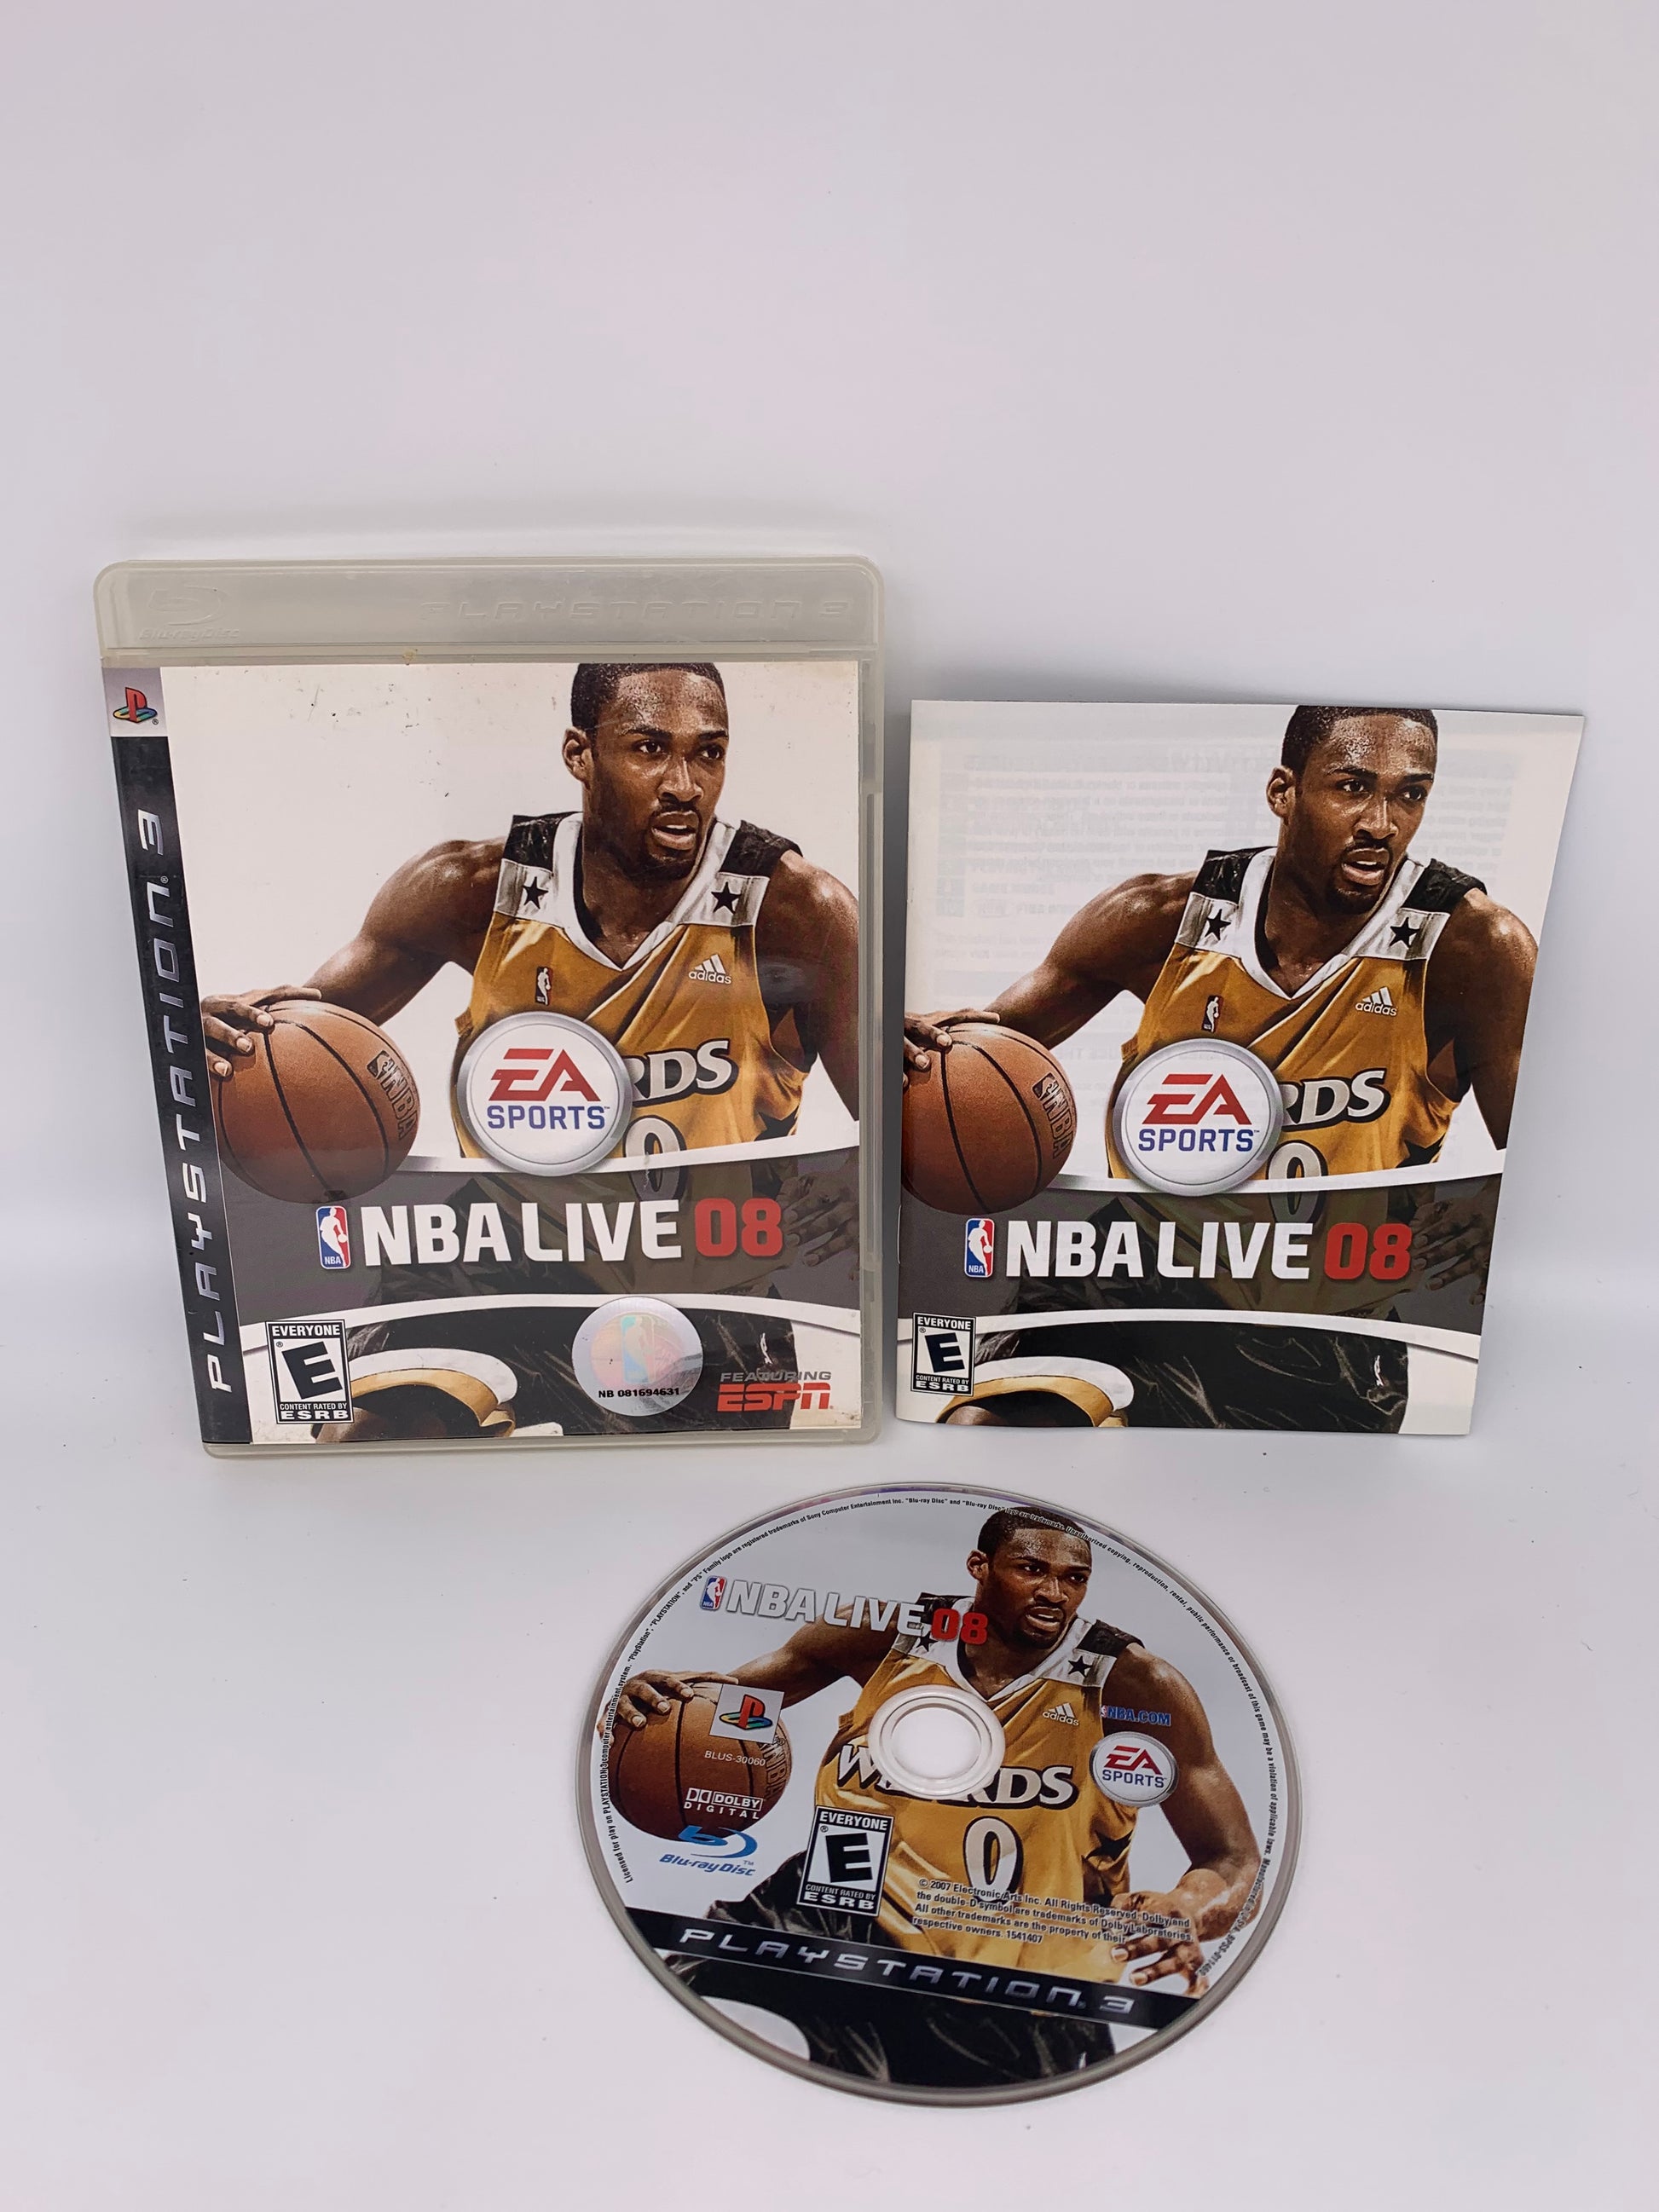 PiXEL-RETRO.COM : SONY PLAYSTATION 3 (PS3) COMPLET CIB BOX MANUAL GAME NTSC NBA LIVE 08